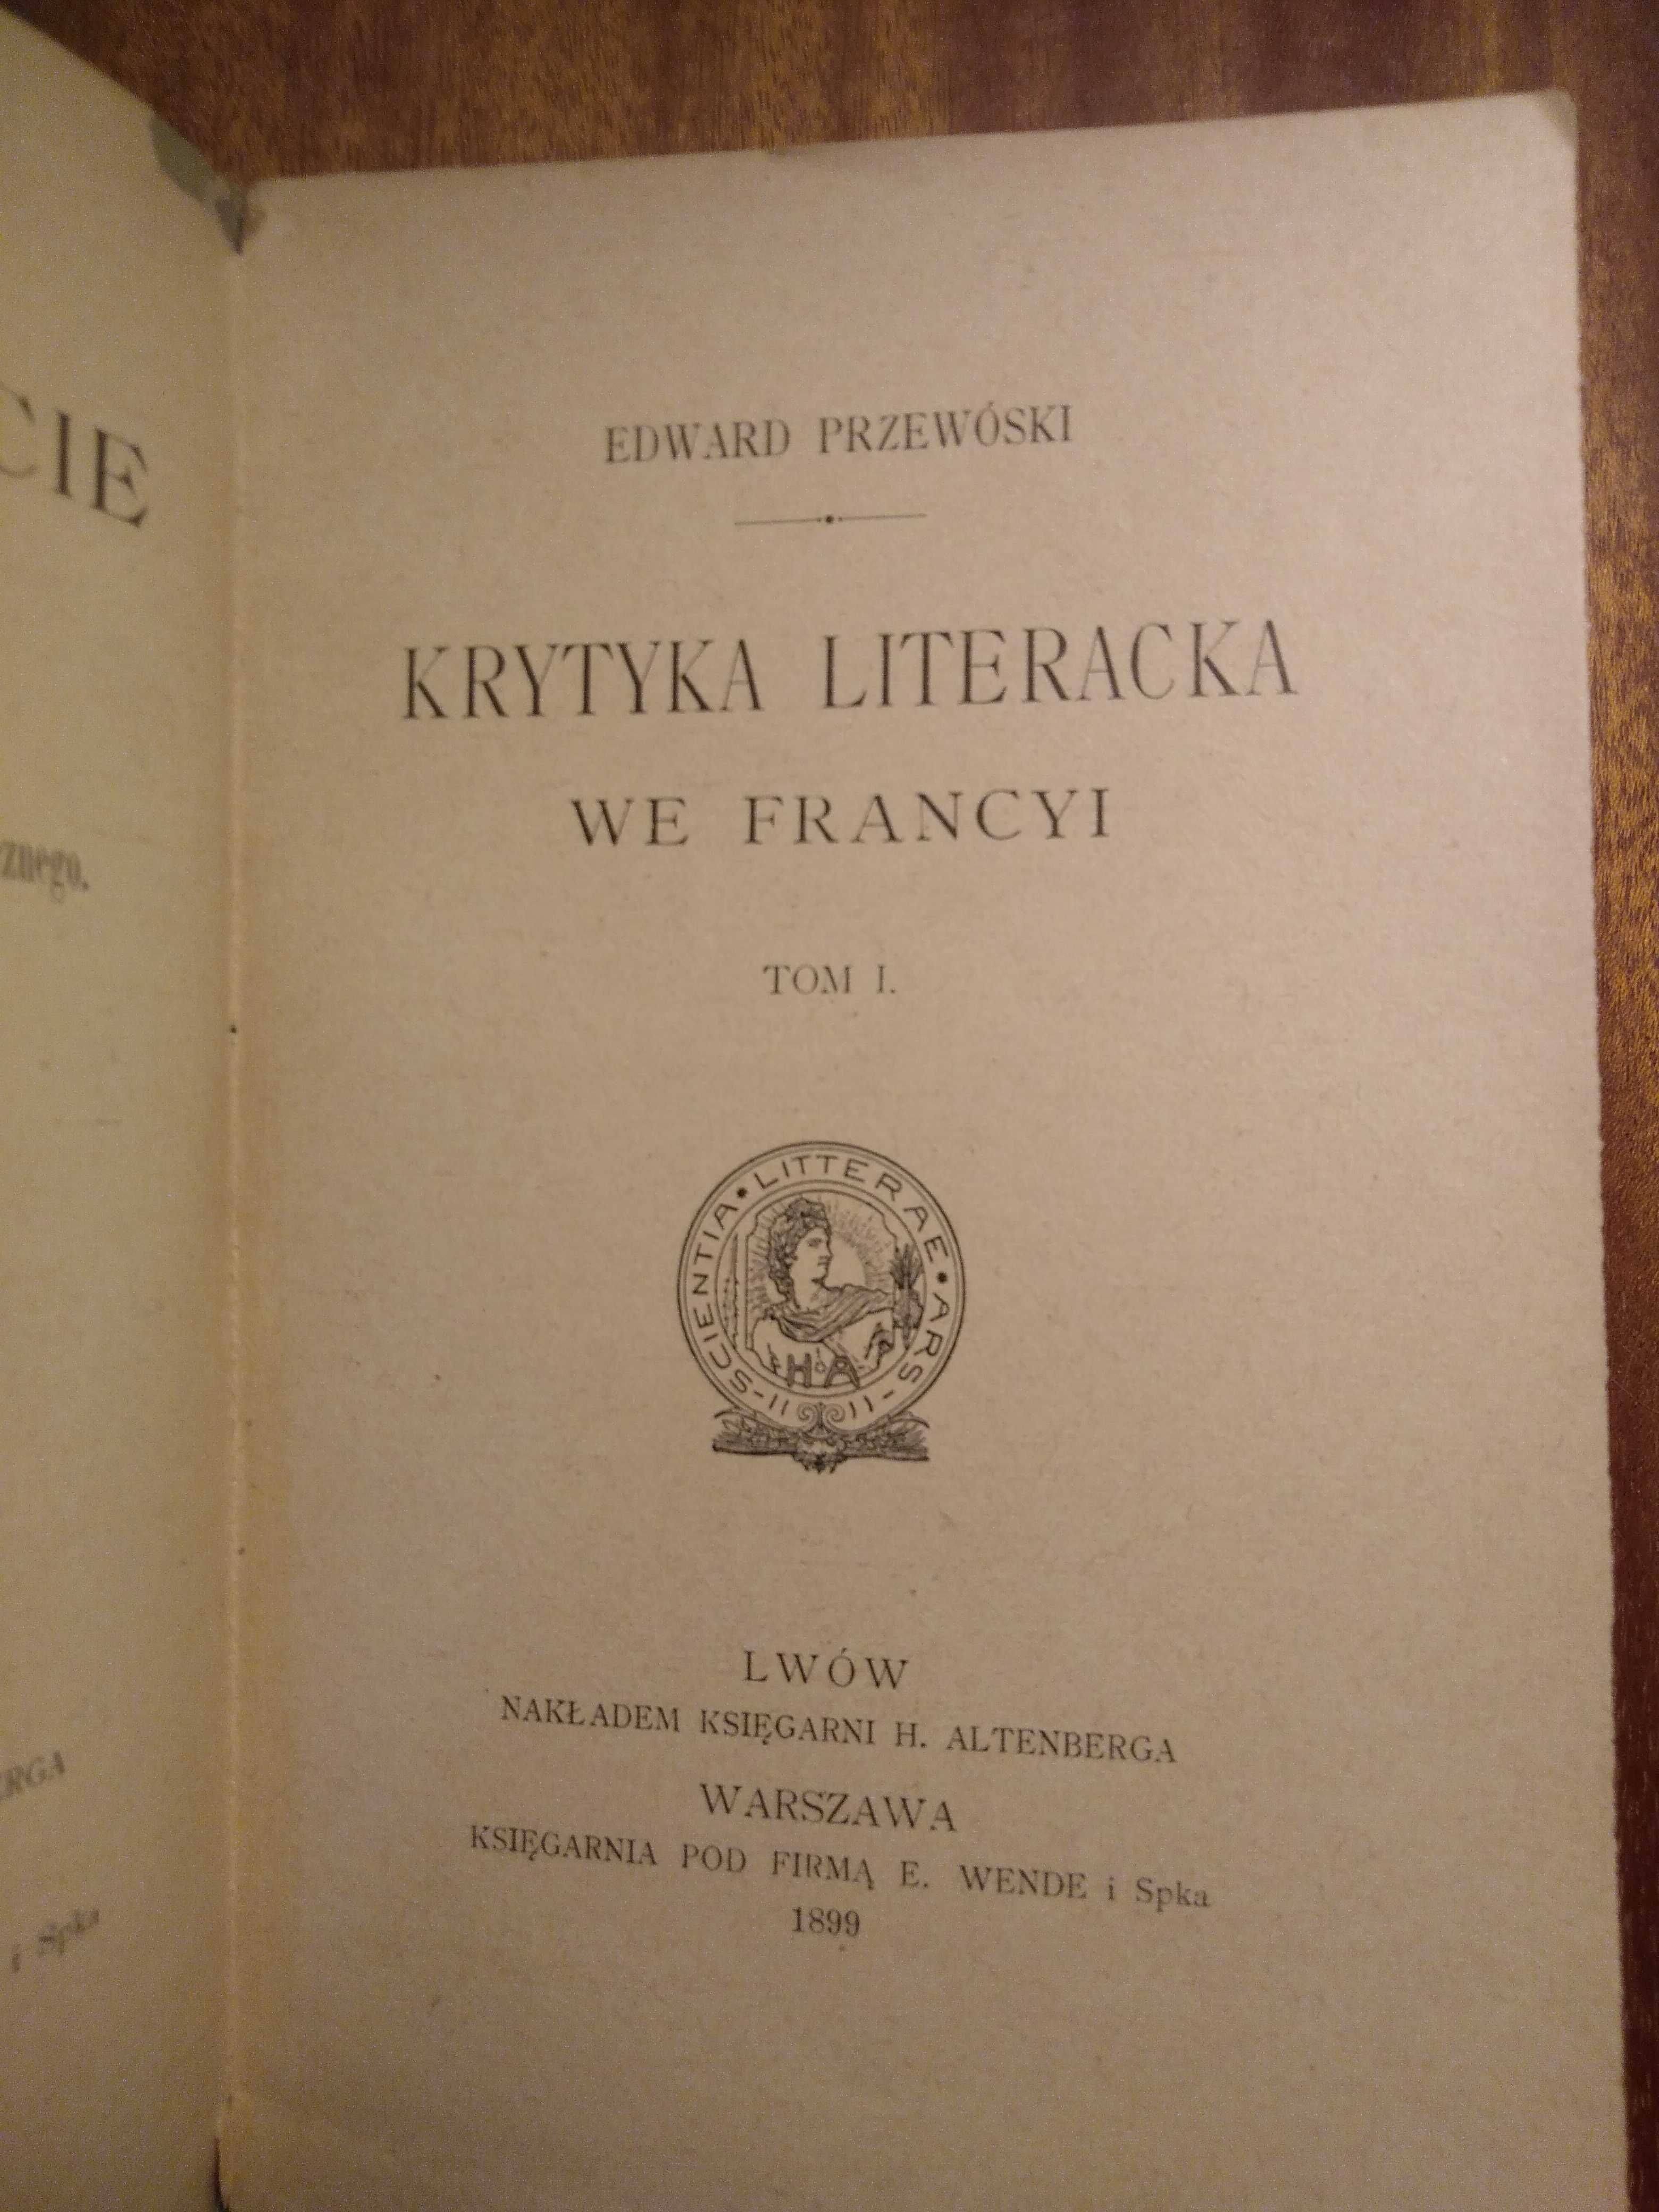 Kryt.lit. we Francyi+O zadaniach i kierunkach filozofii-współopr.-1899